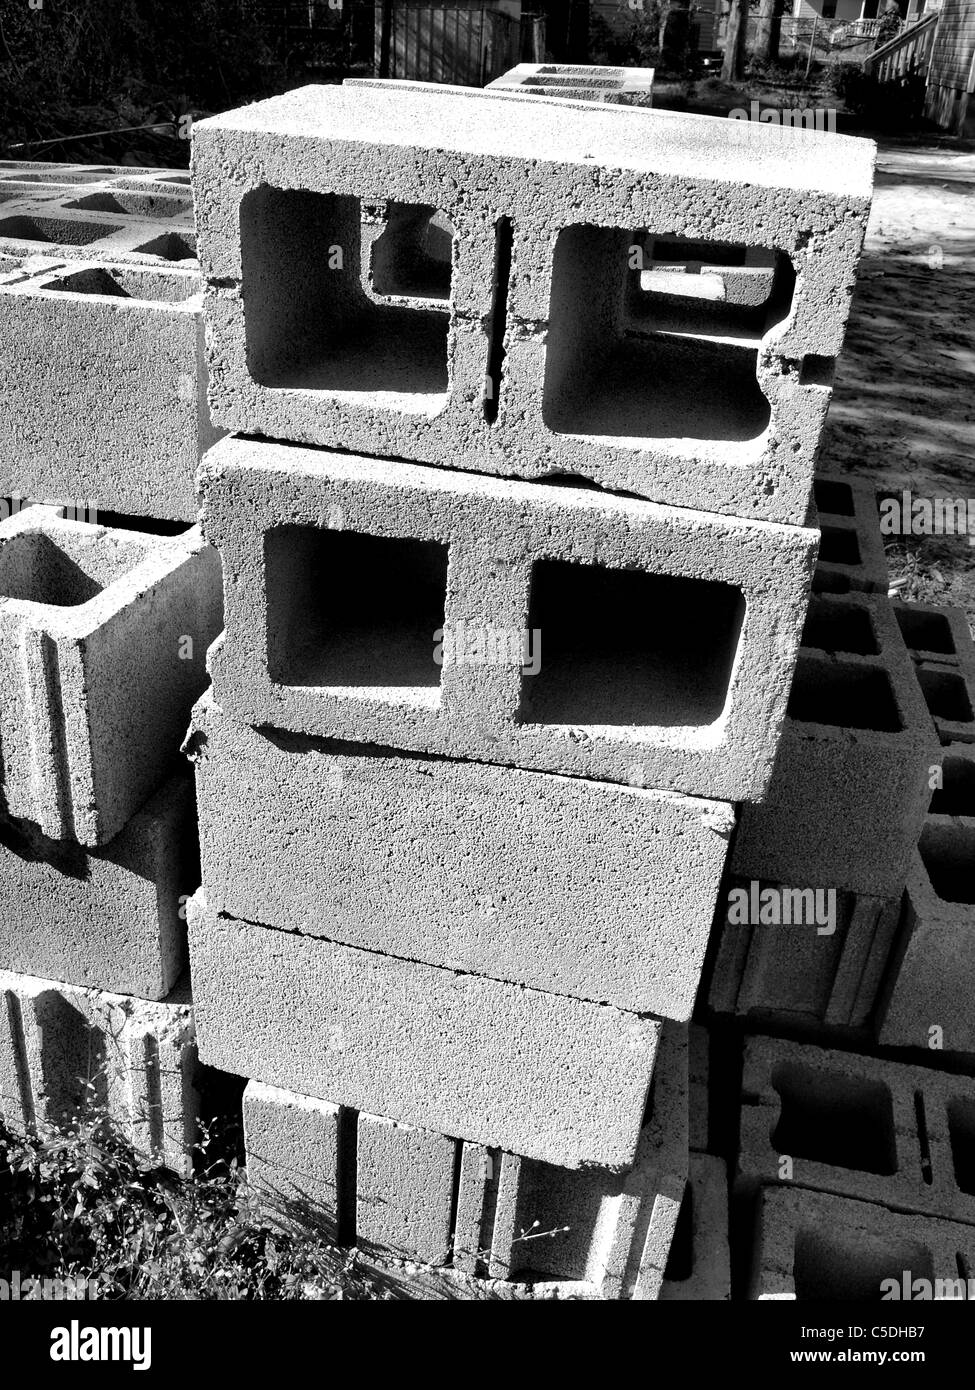 cement building blocks squares concrete construction material pile block Stock Photo